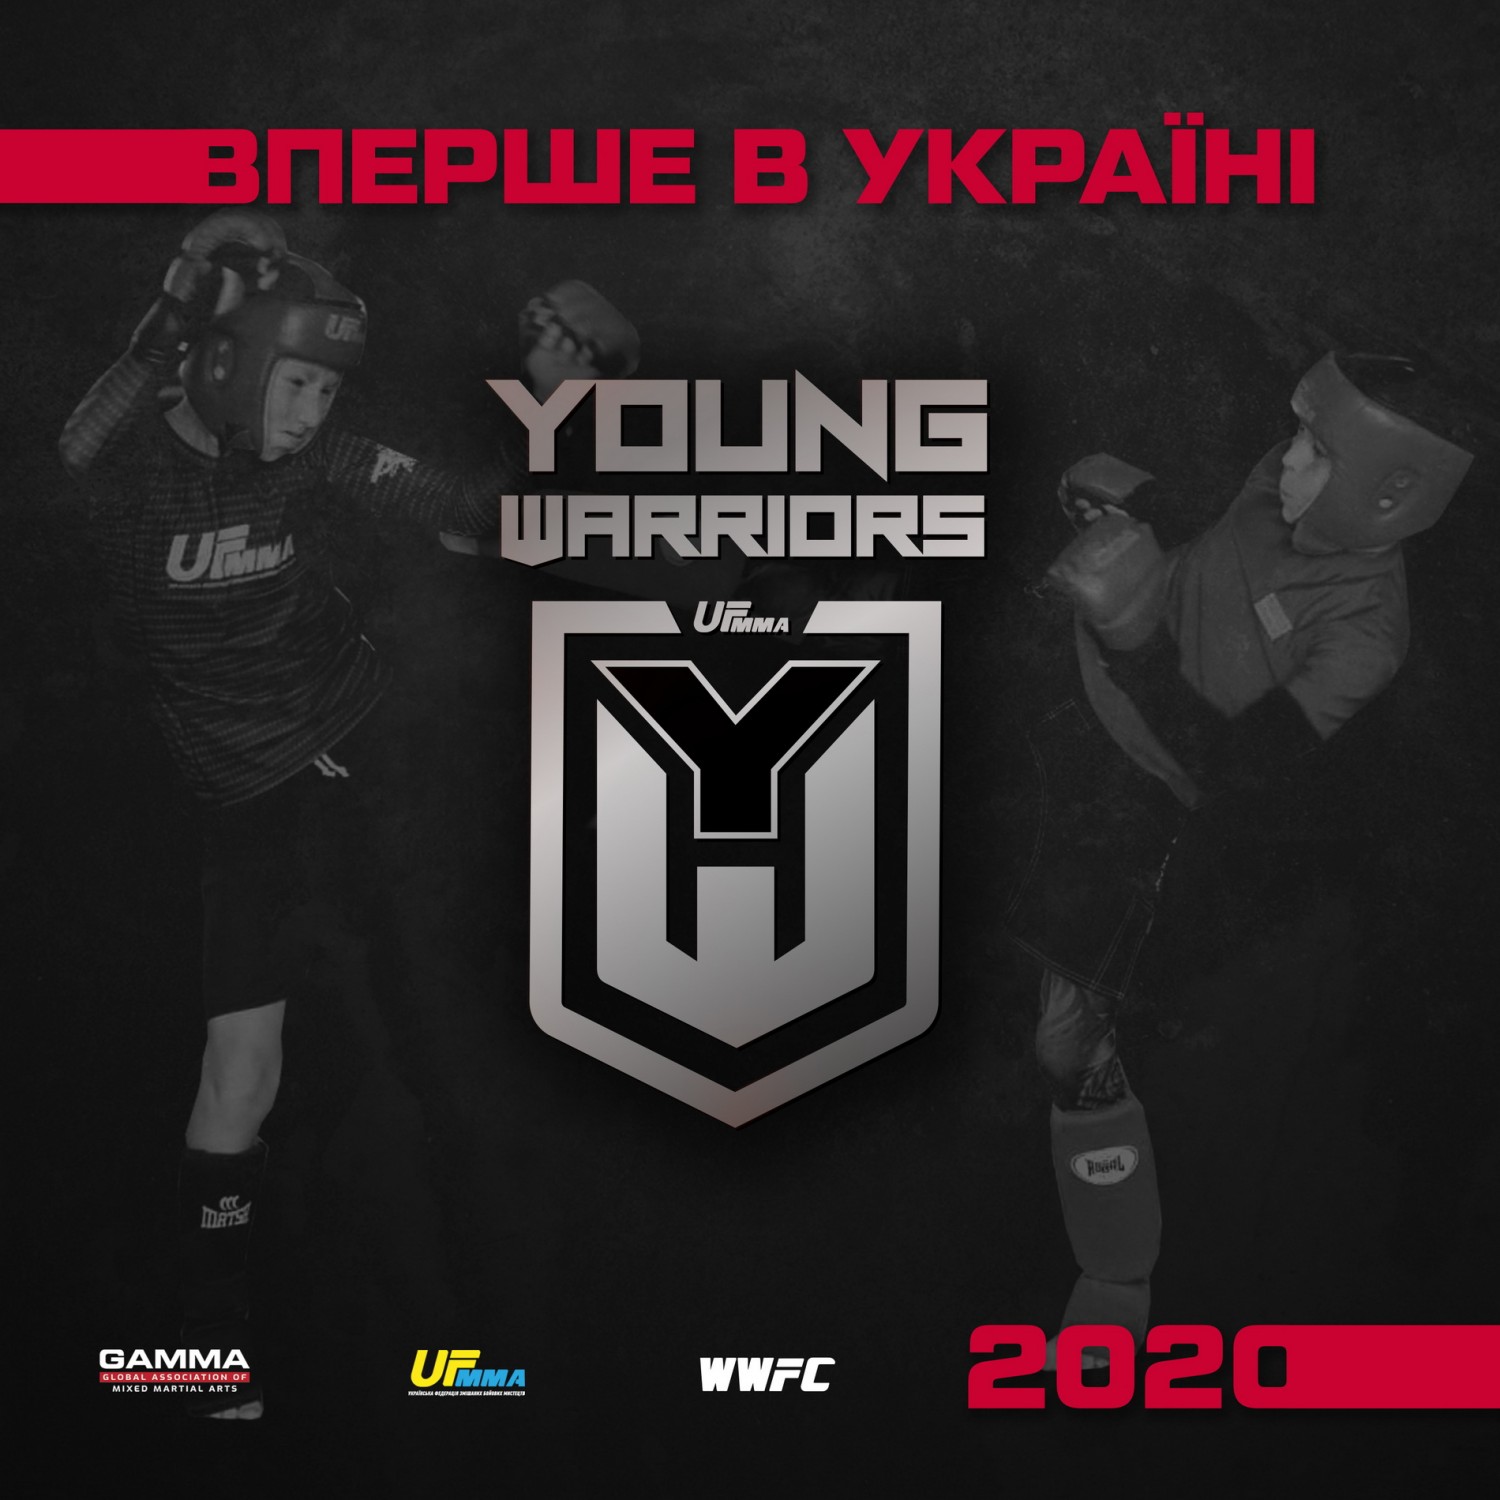 Вперше в Україні: серія дитячих турнірів зі змішаних бойових мистецтв - YOUNG WARRIORS International Tournament